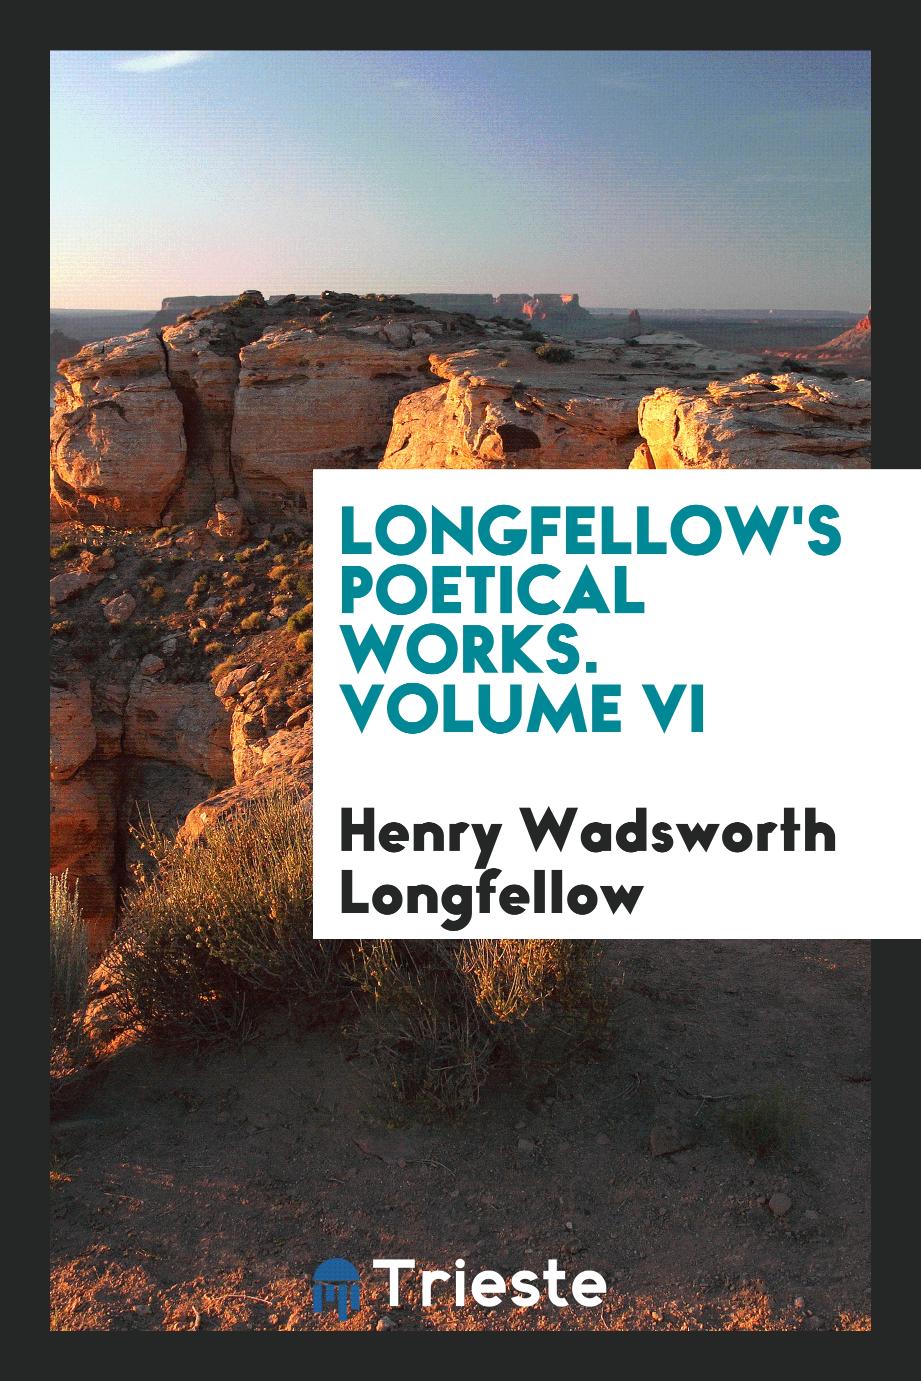 Longfellow's poetical works. Volume VI